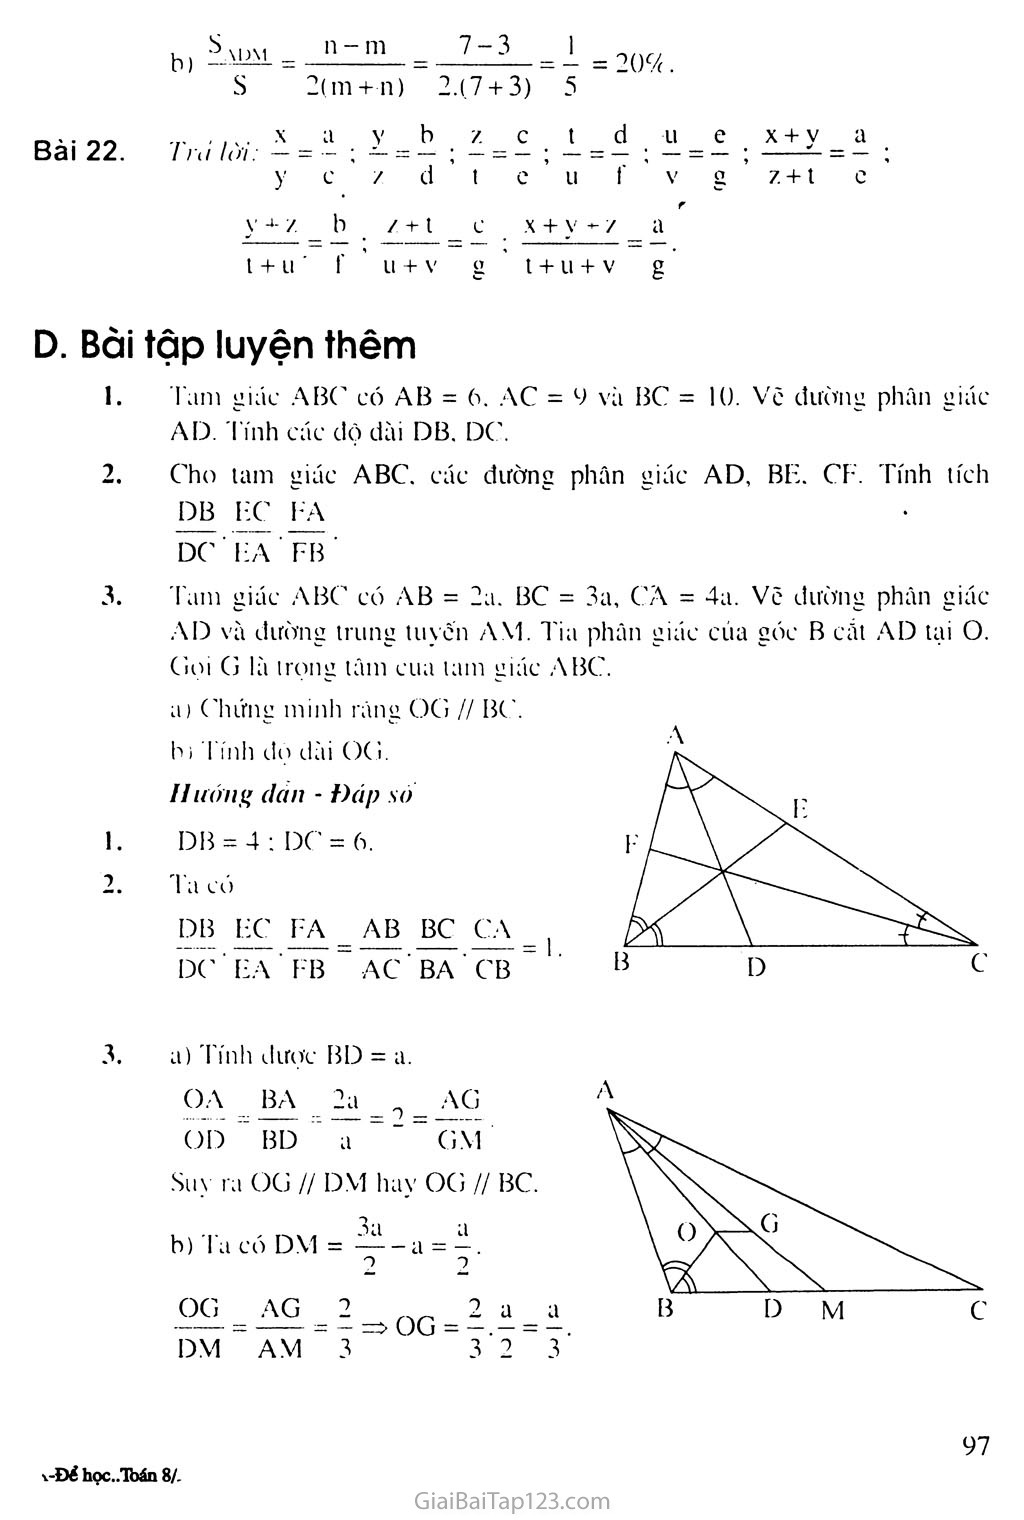 Bài 3. Tính chất đường phân giác của tam giác trang 4